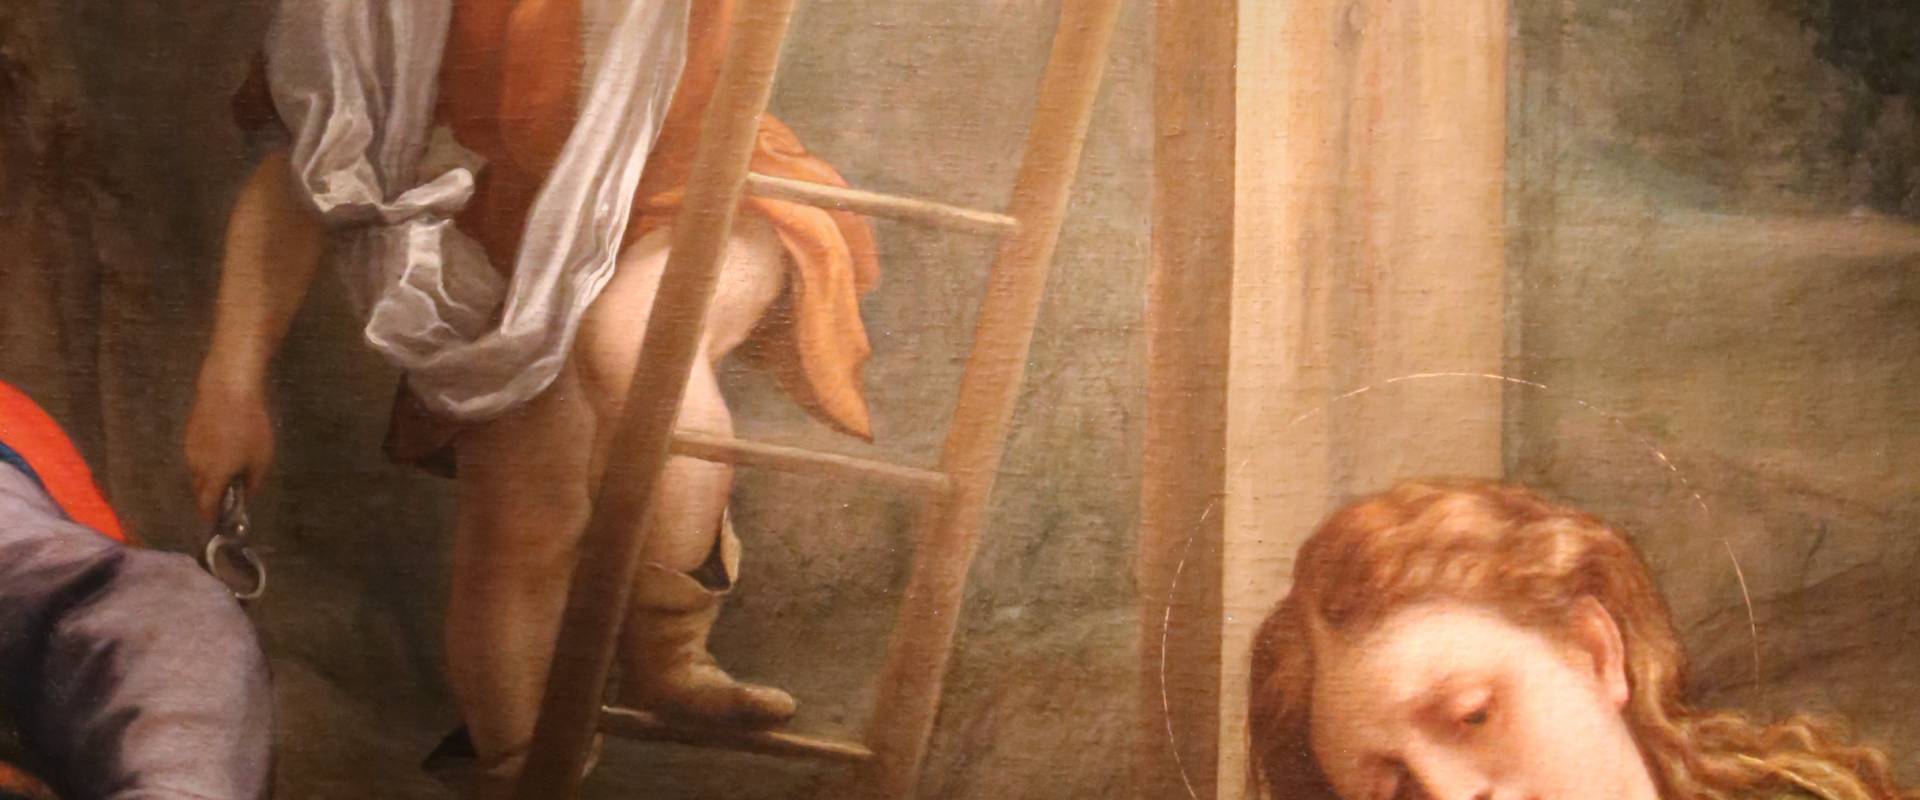 Correggio, compianto sul cristo morto, 1524 ca. 05 scala foto di Sailko